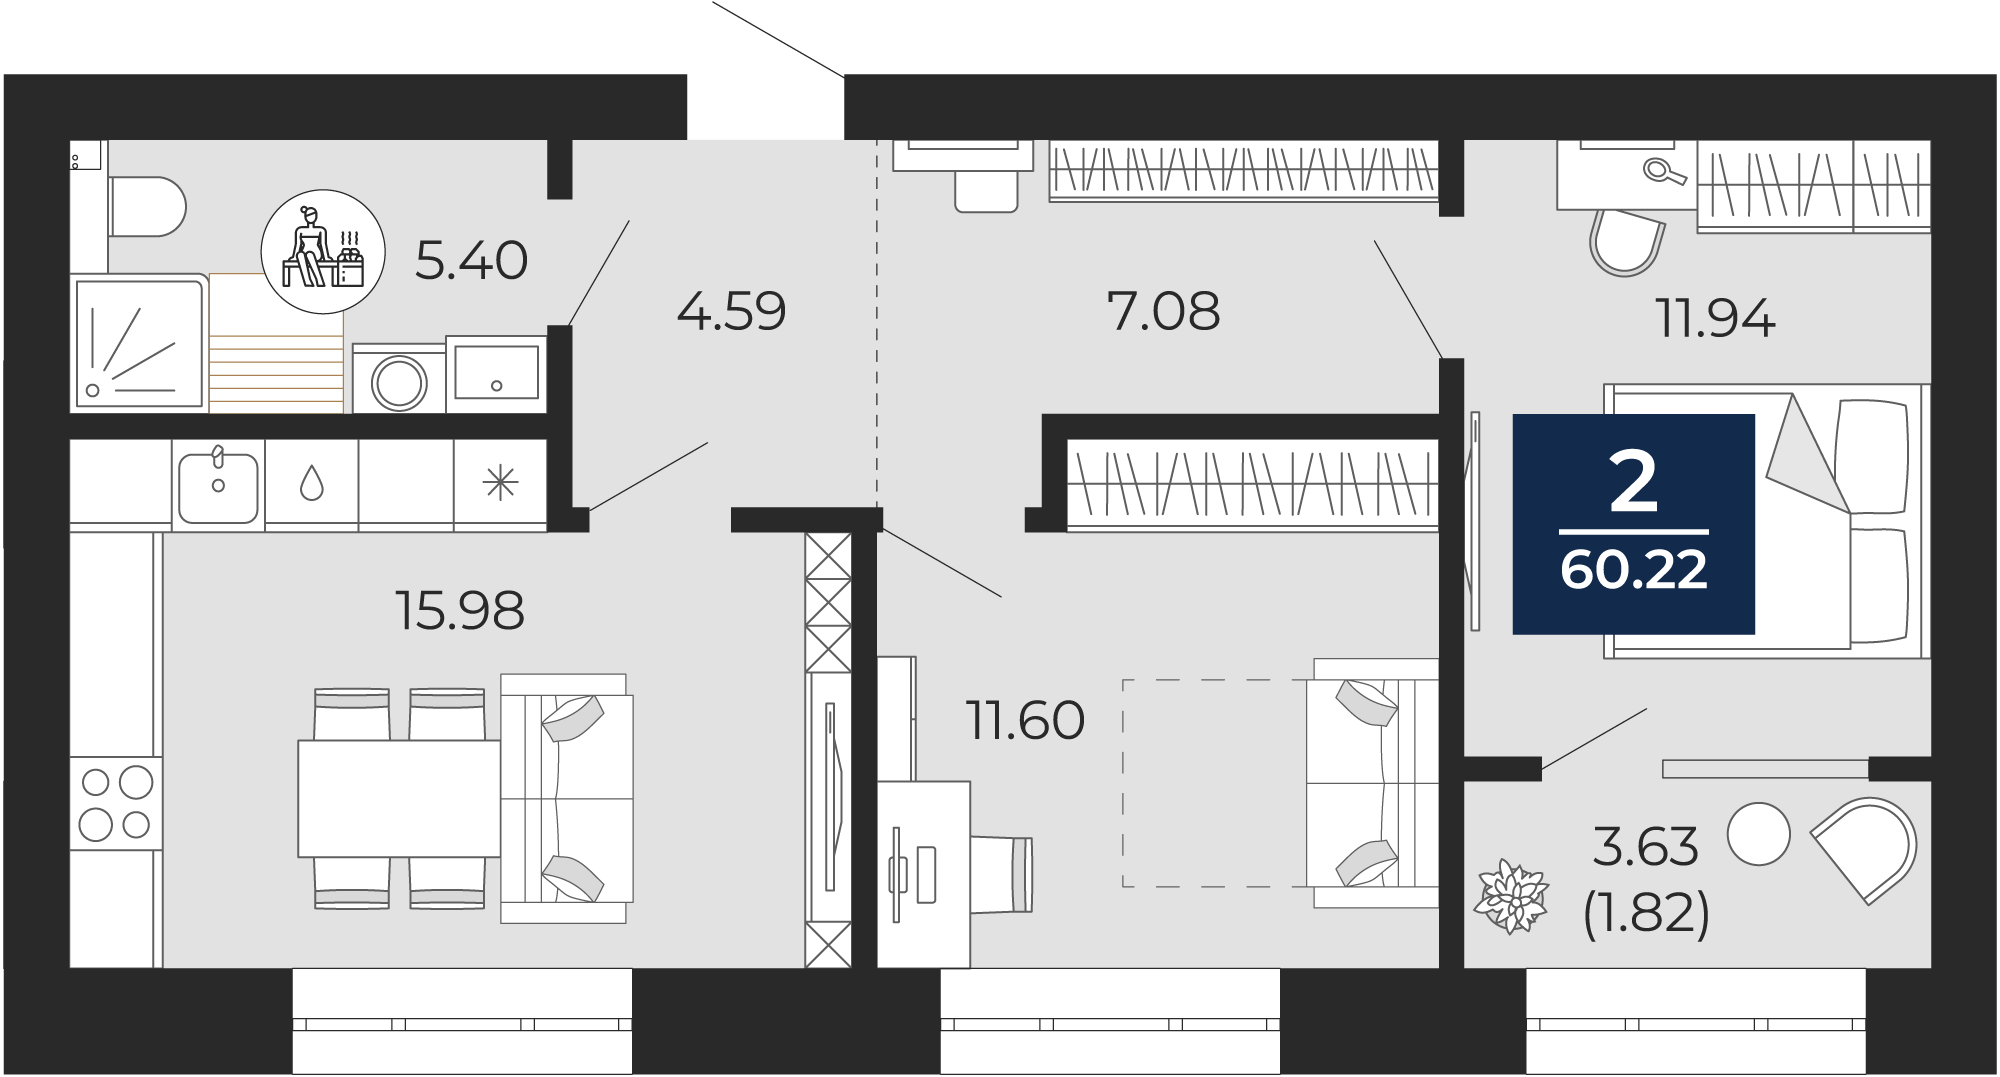 Квартира № 256, 2-комнатная, 60.22 кв. м, 10 этаж